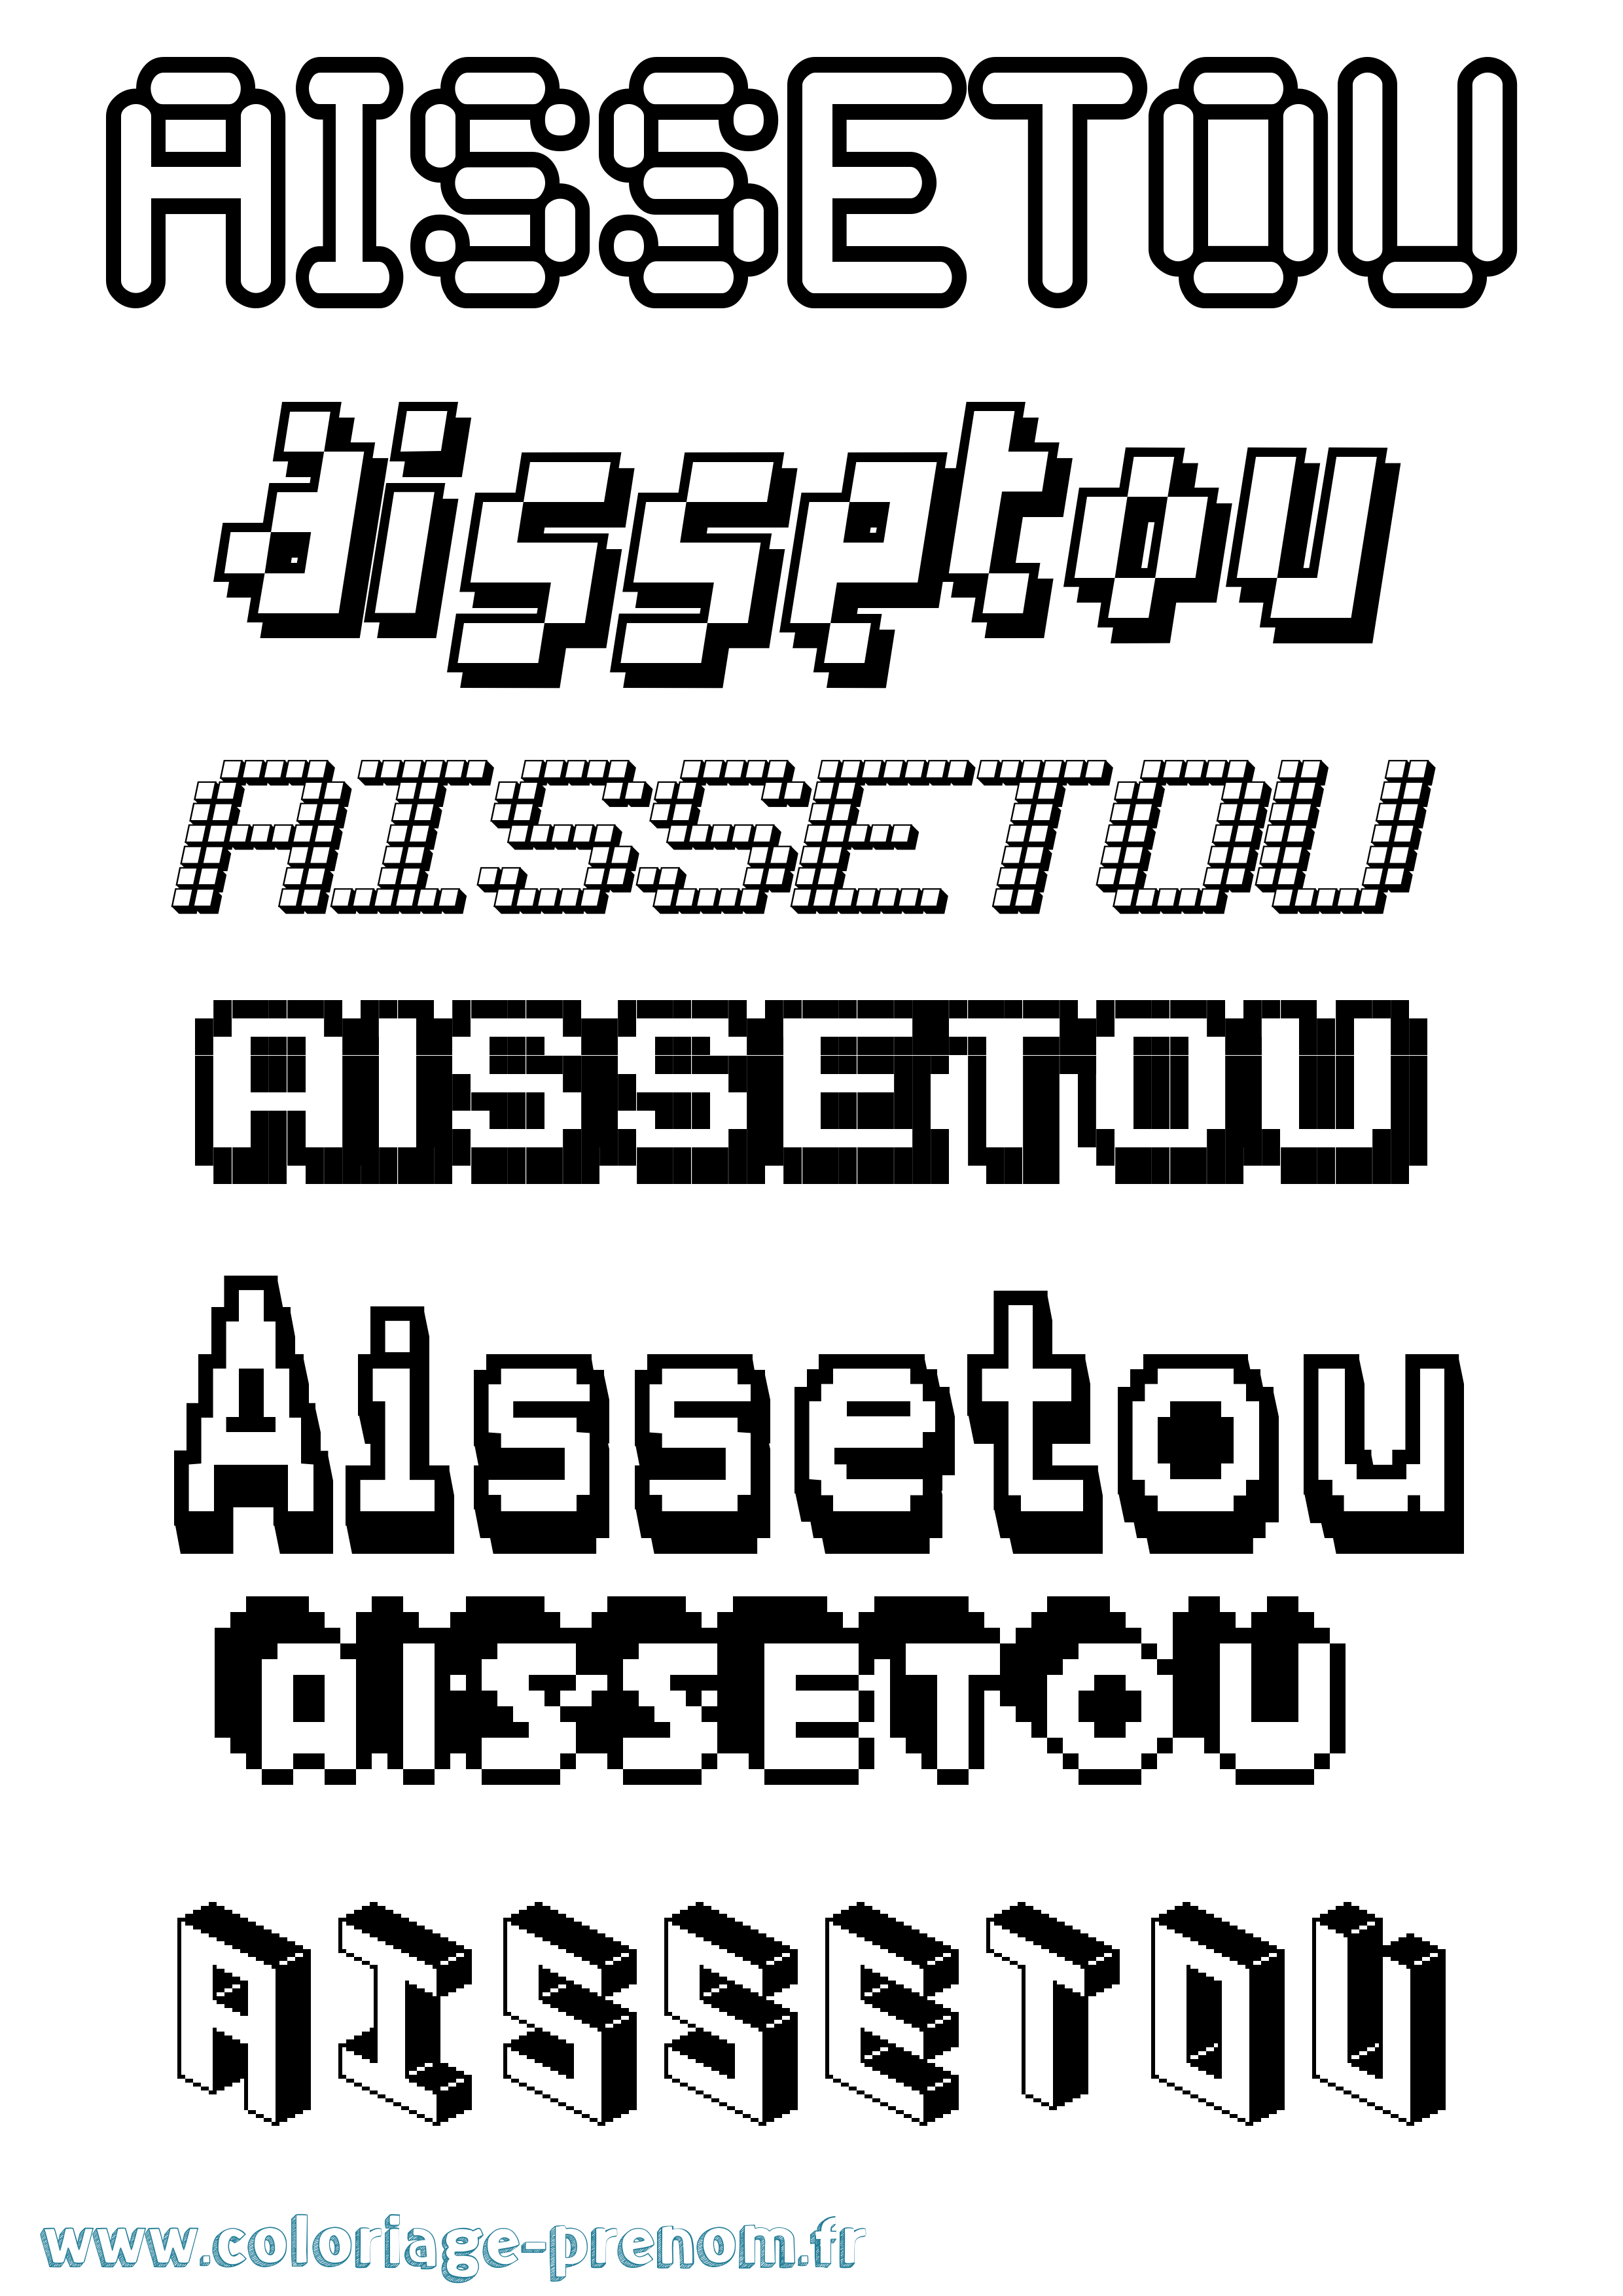 Coloriage prénom Aissetou Pixel